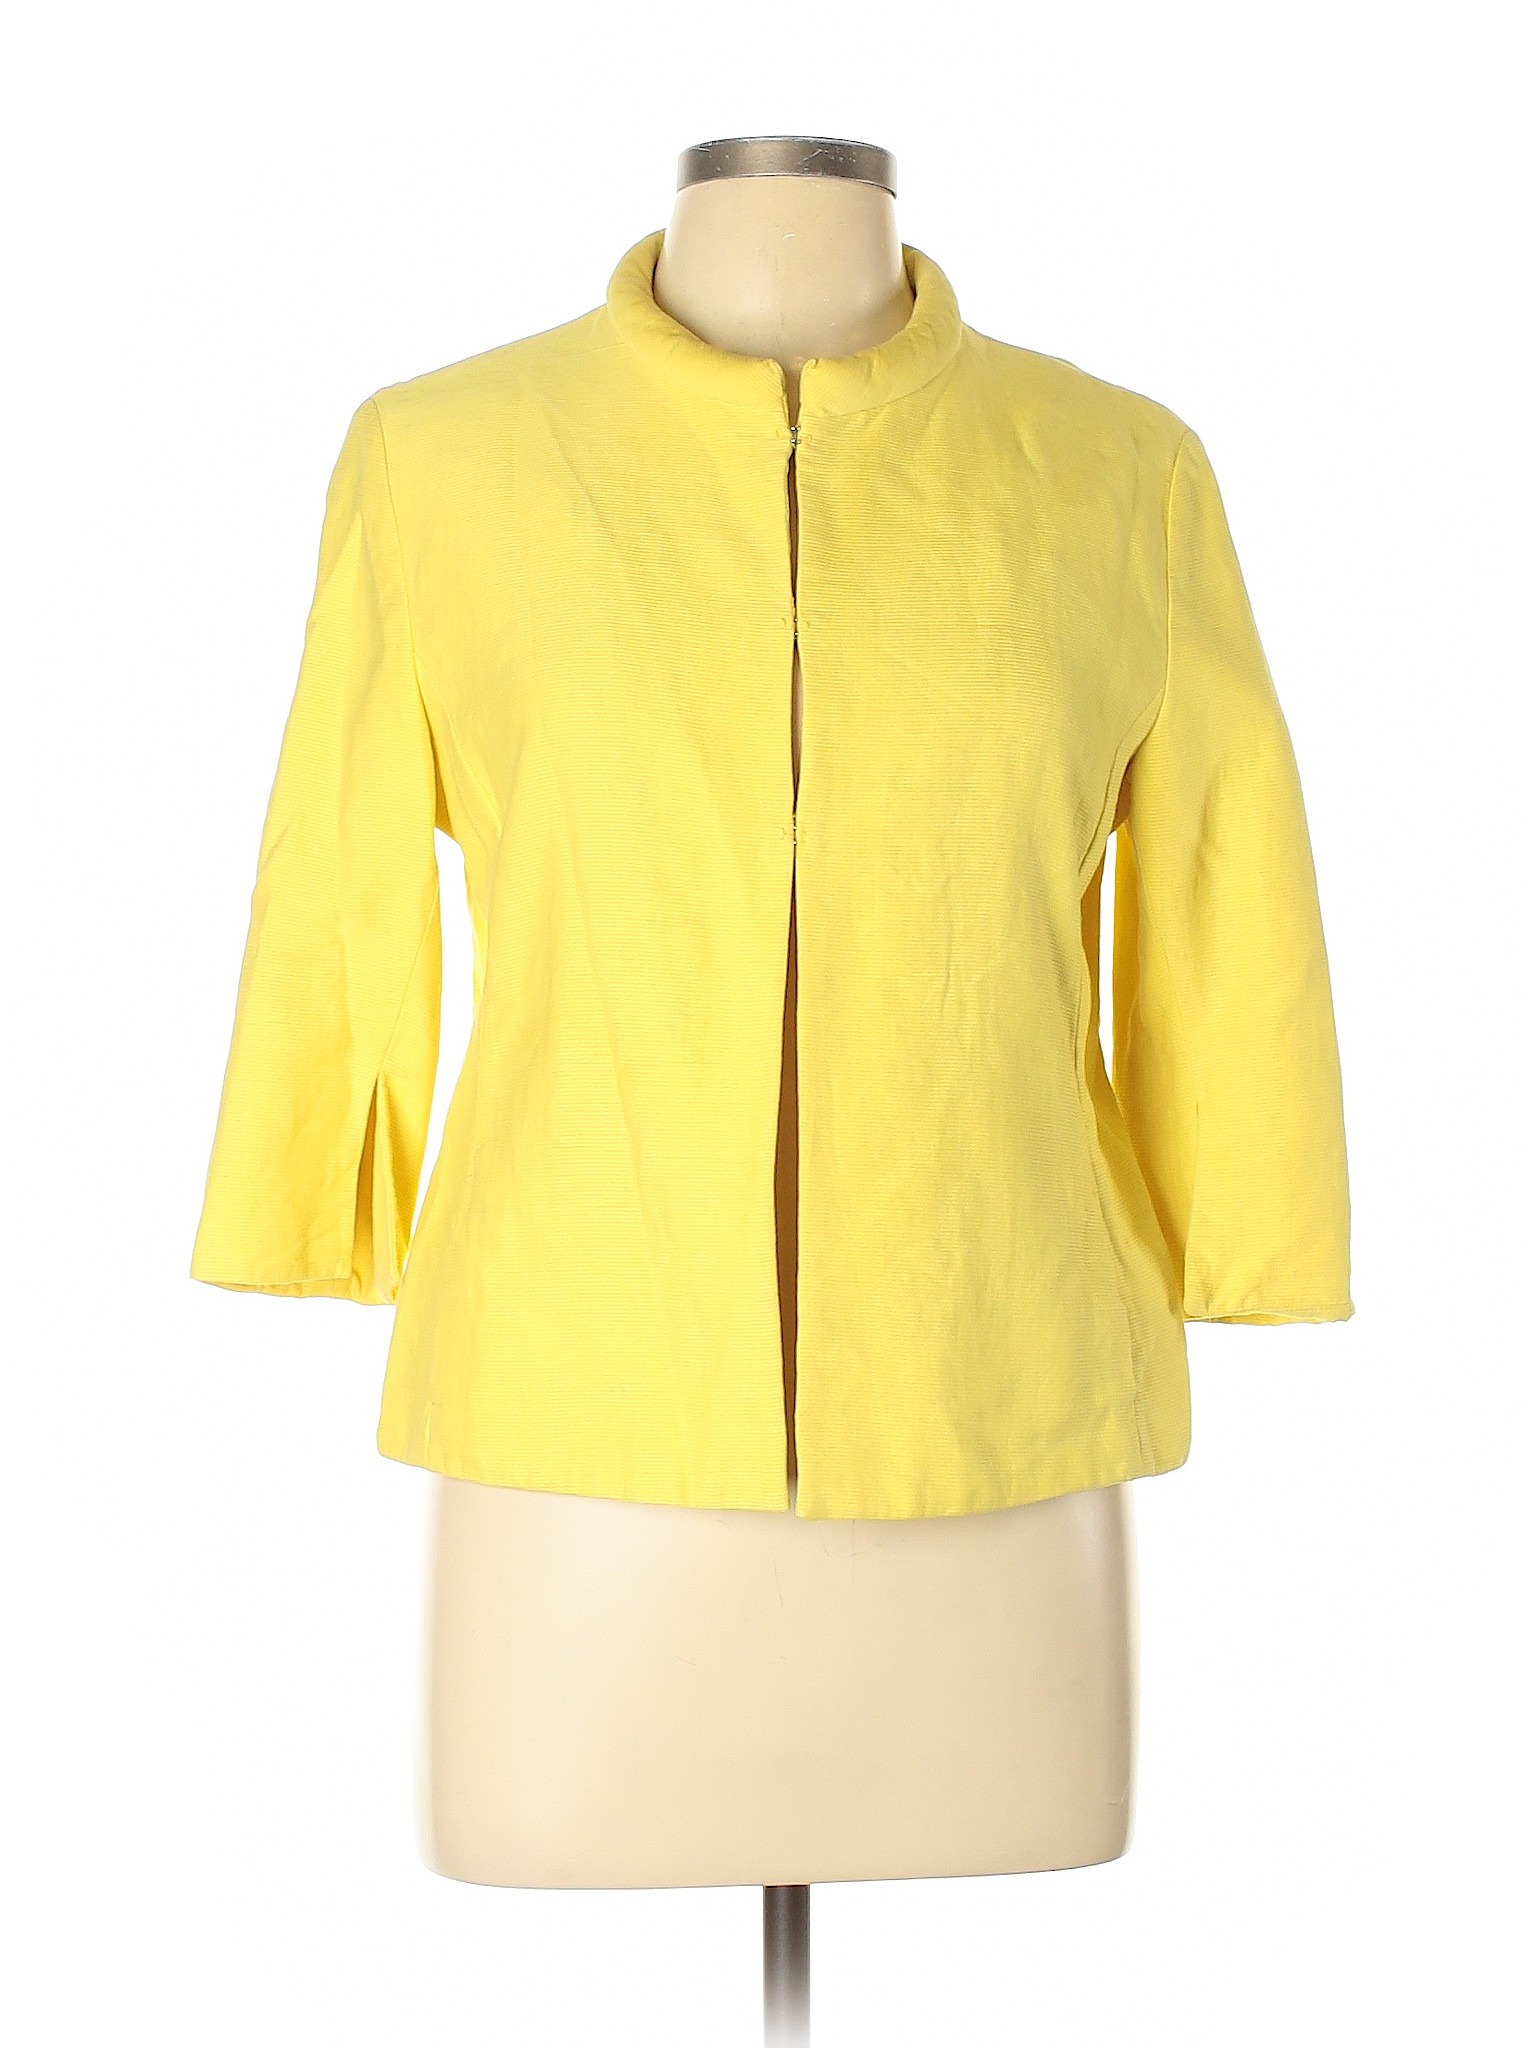 Akris Punto Women Yellow Jacket 10 | eBay